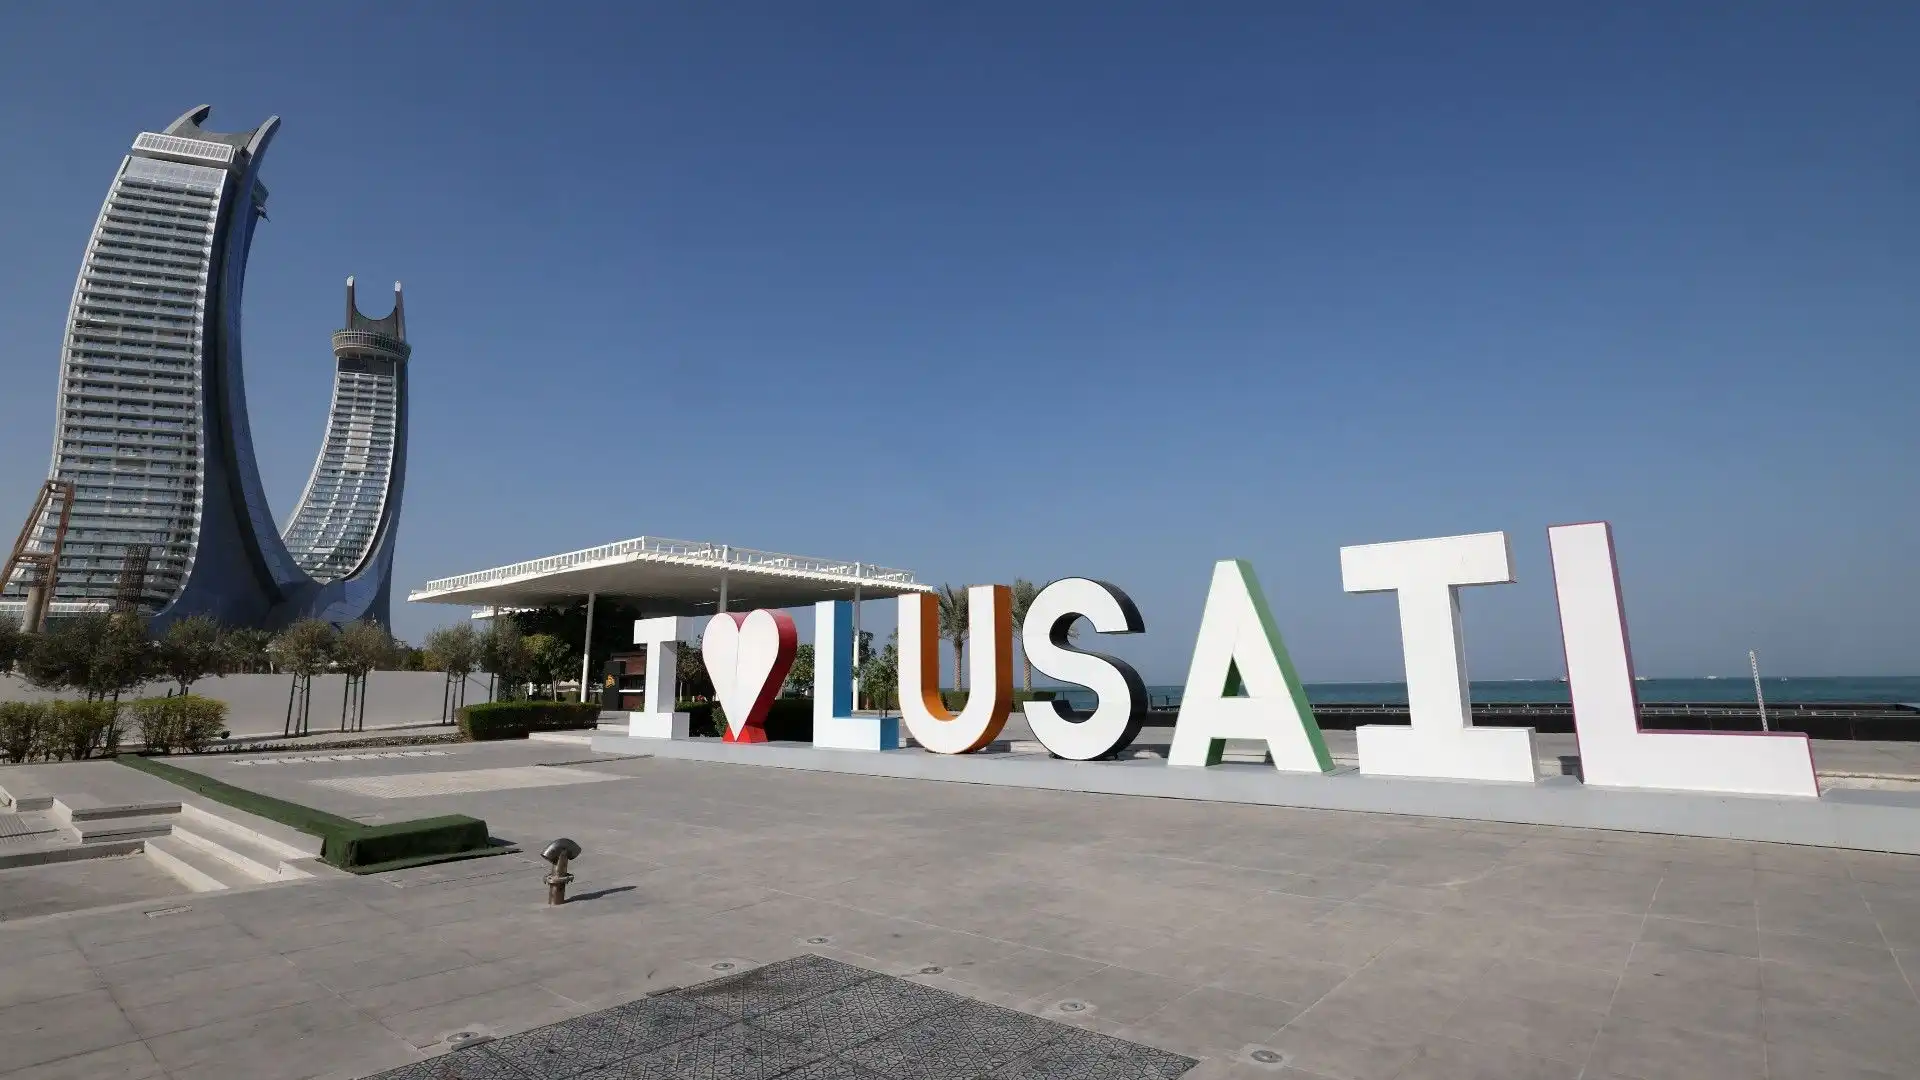 Lo stadio si trova nella città di Lusail, a circa 20 km da Doha